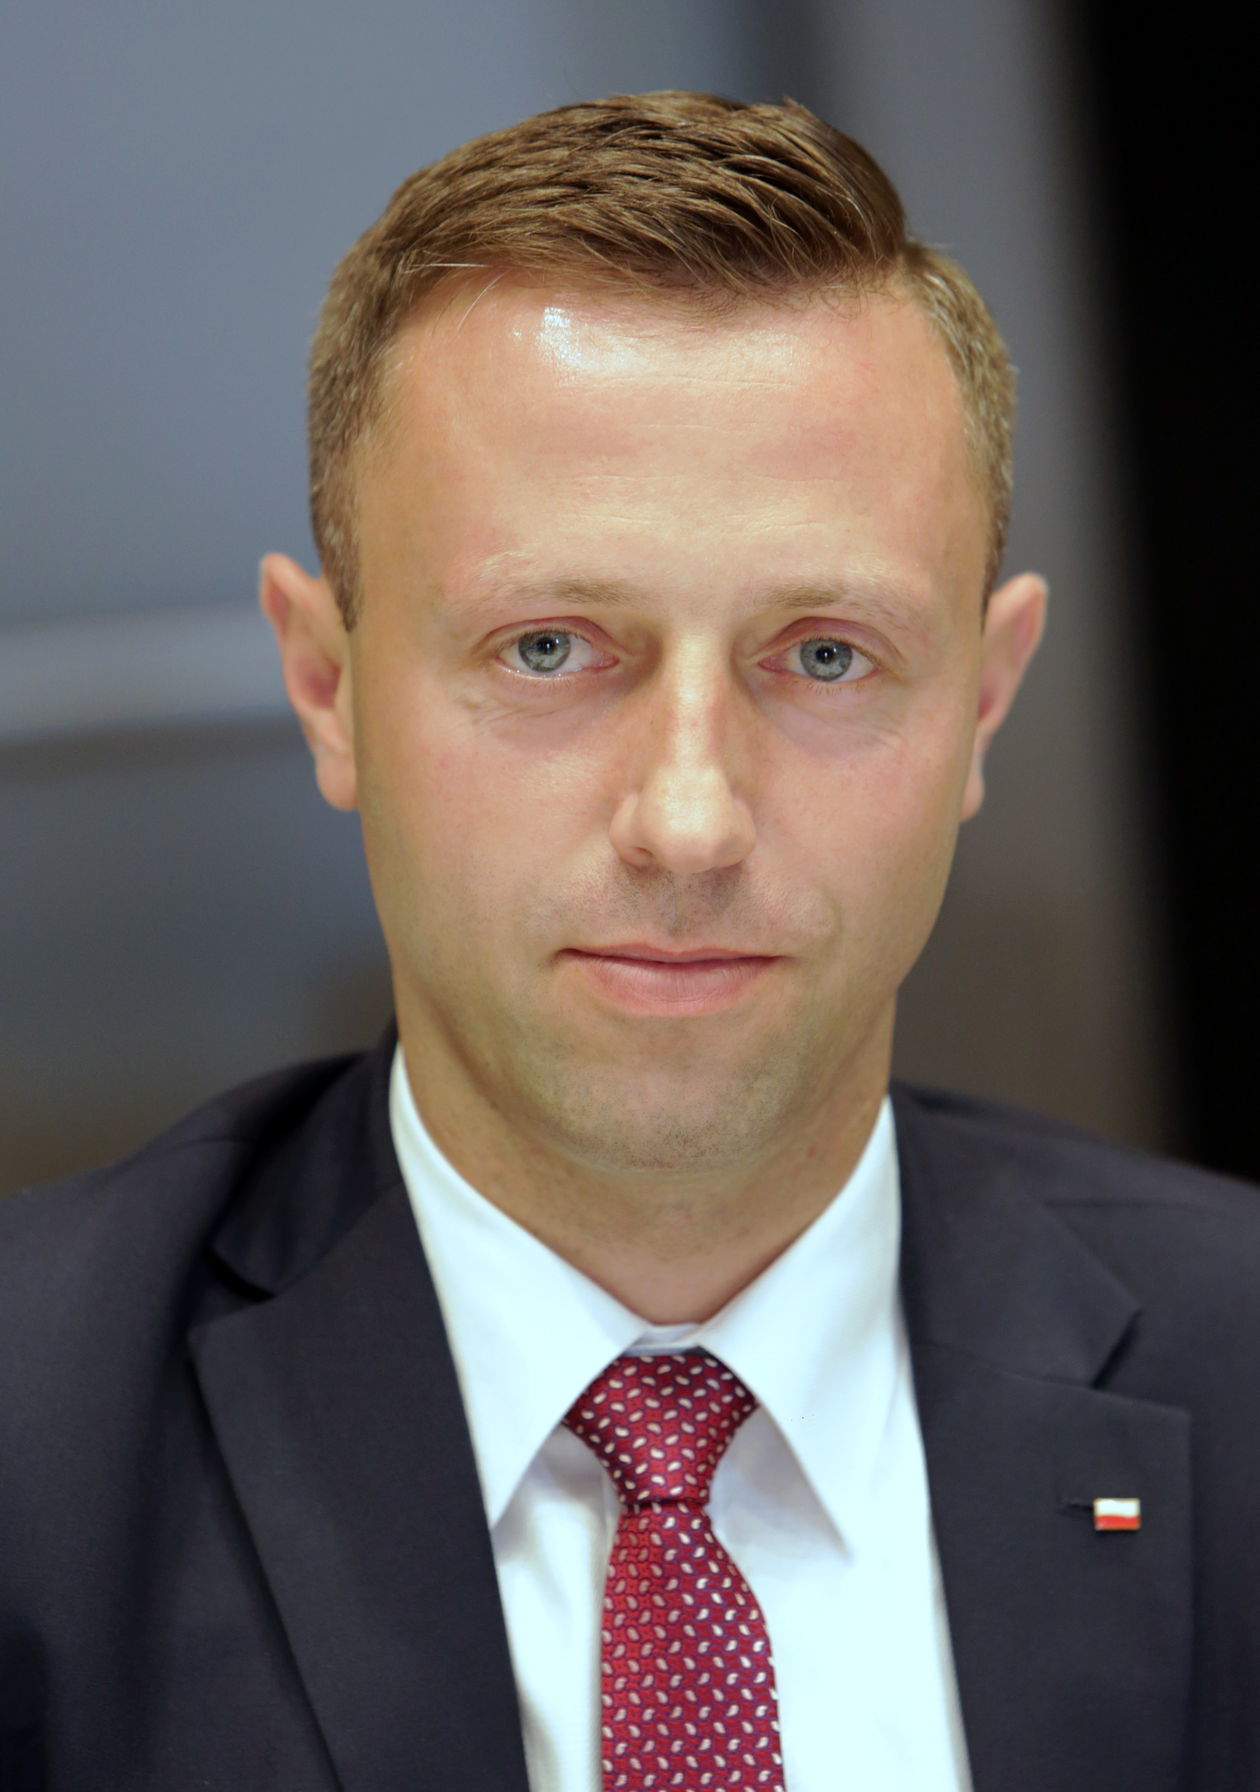  <p>Michał Mulawa - przewodniczący Sejmiku</p>